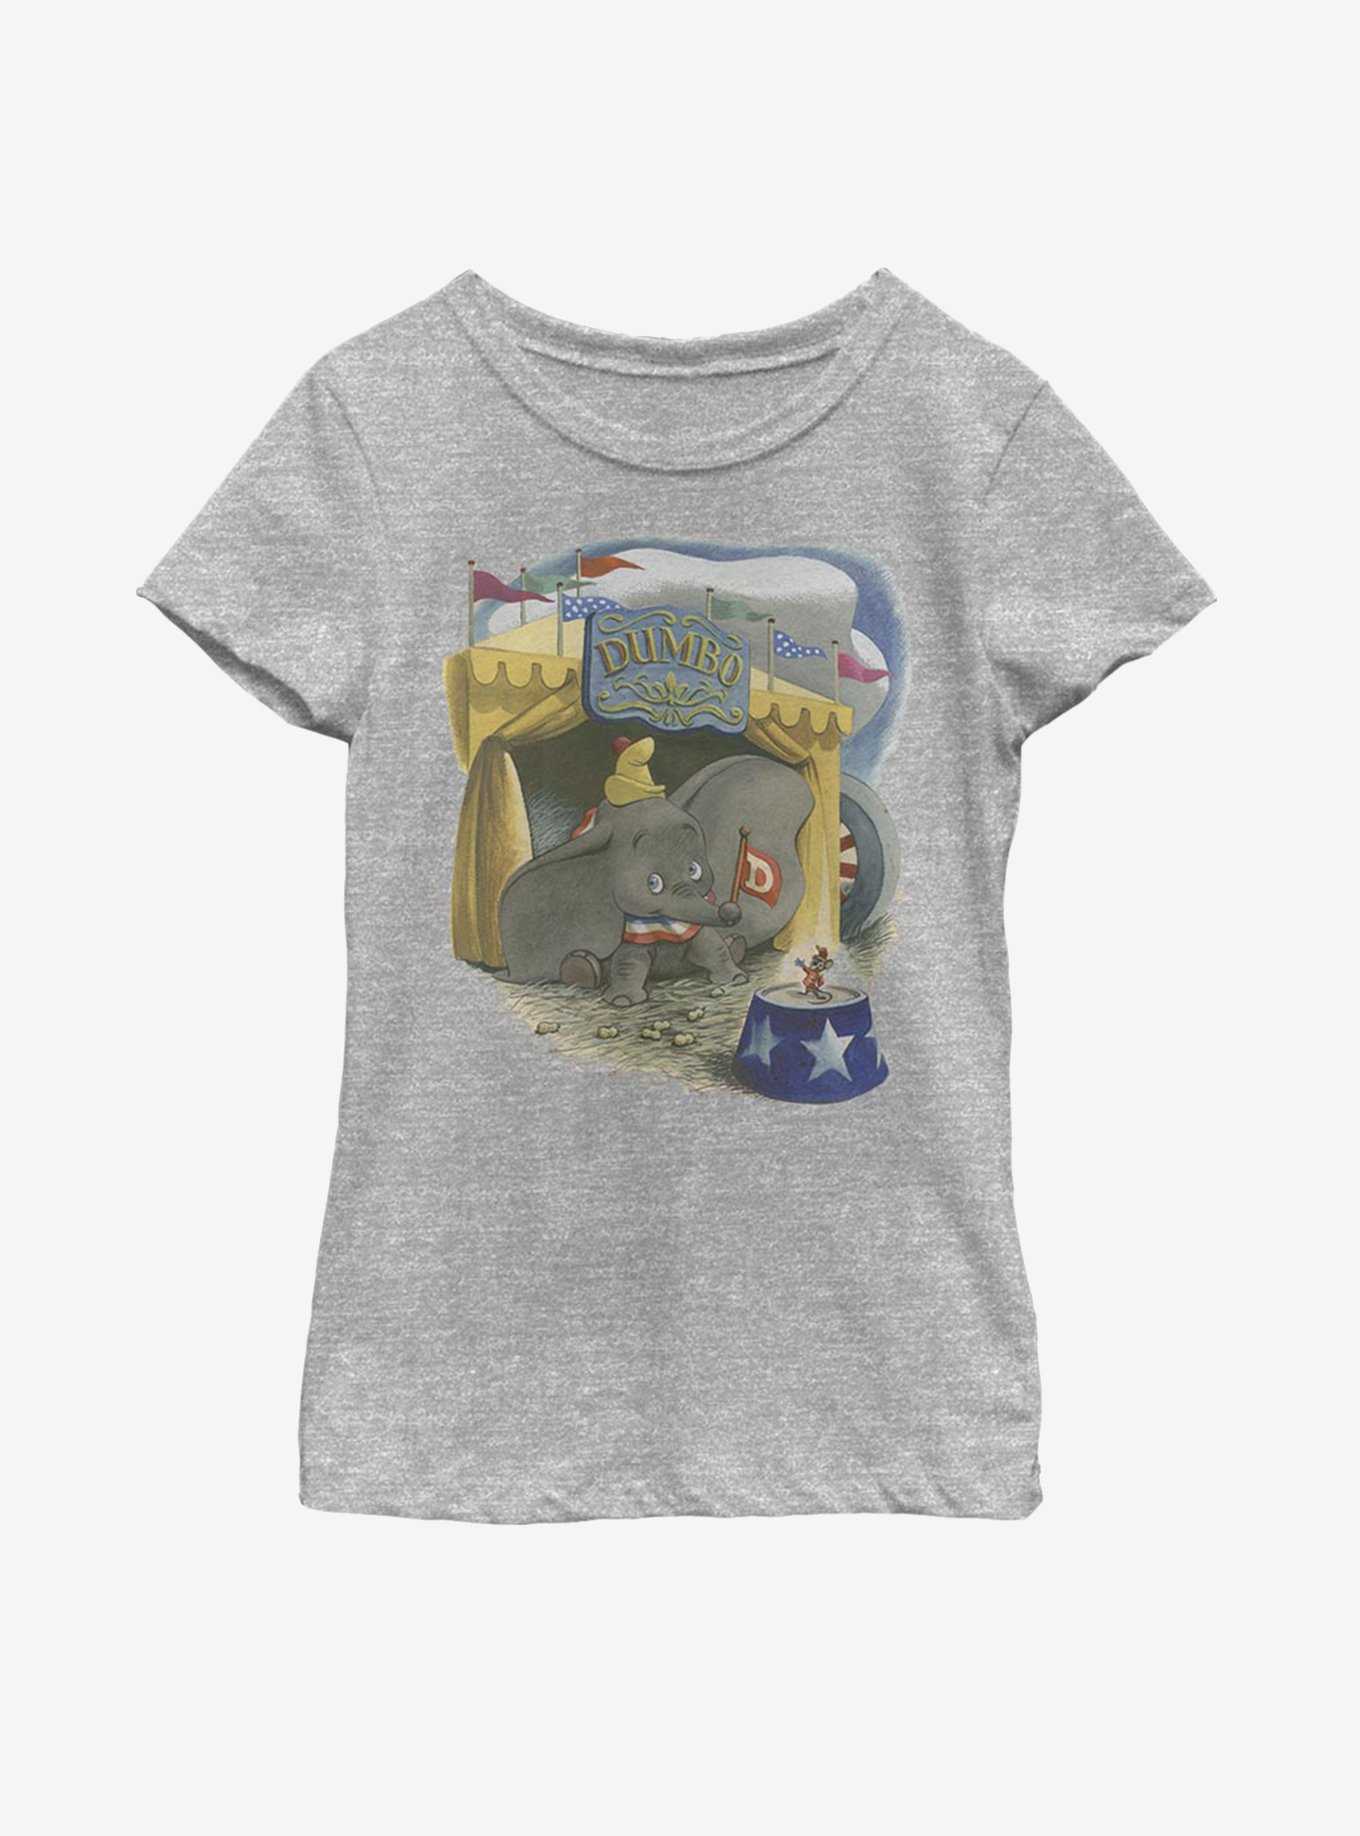 Disney Dumbo Illustrated Elephant Youth Girls T-Shirt, , hi-res